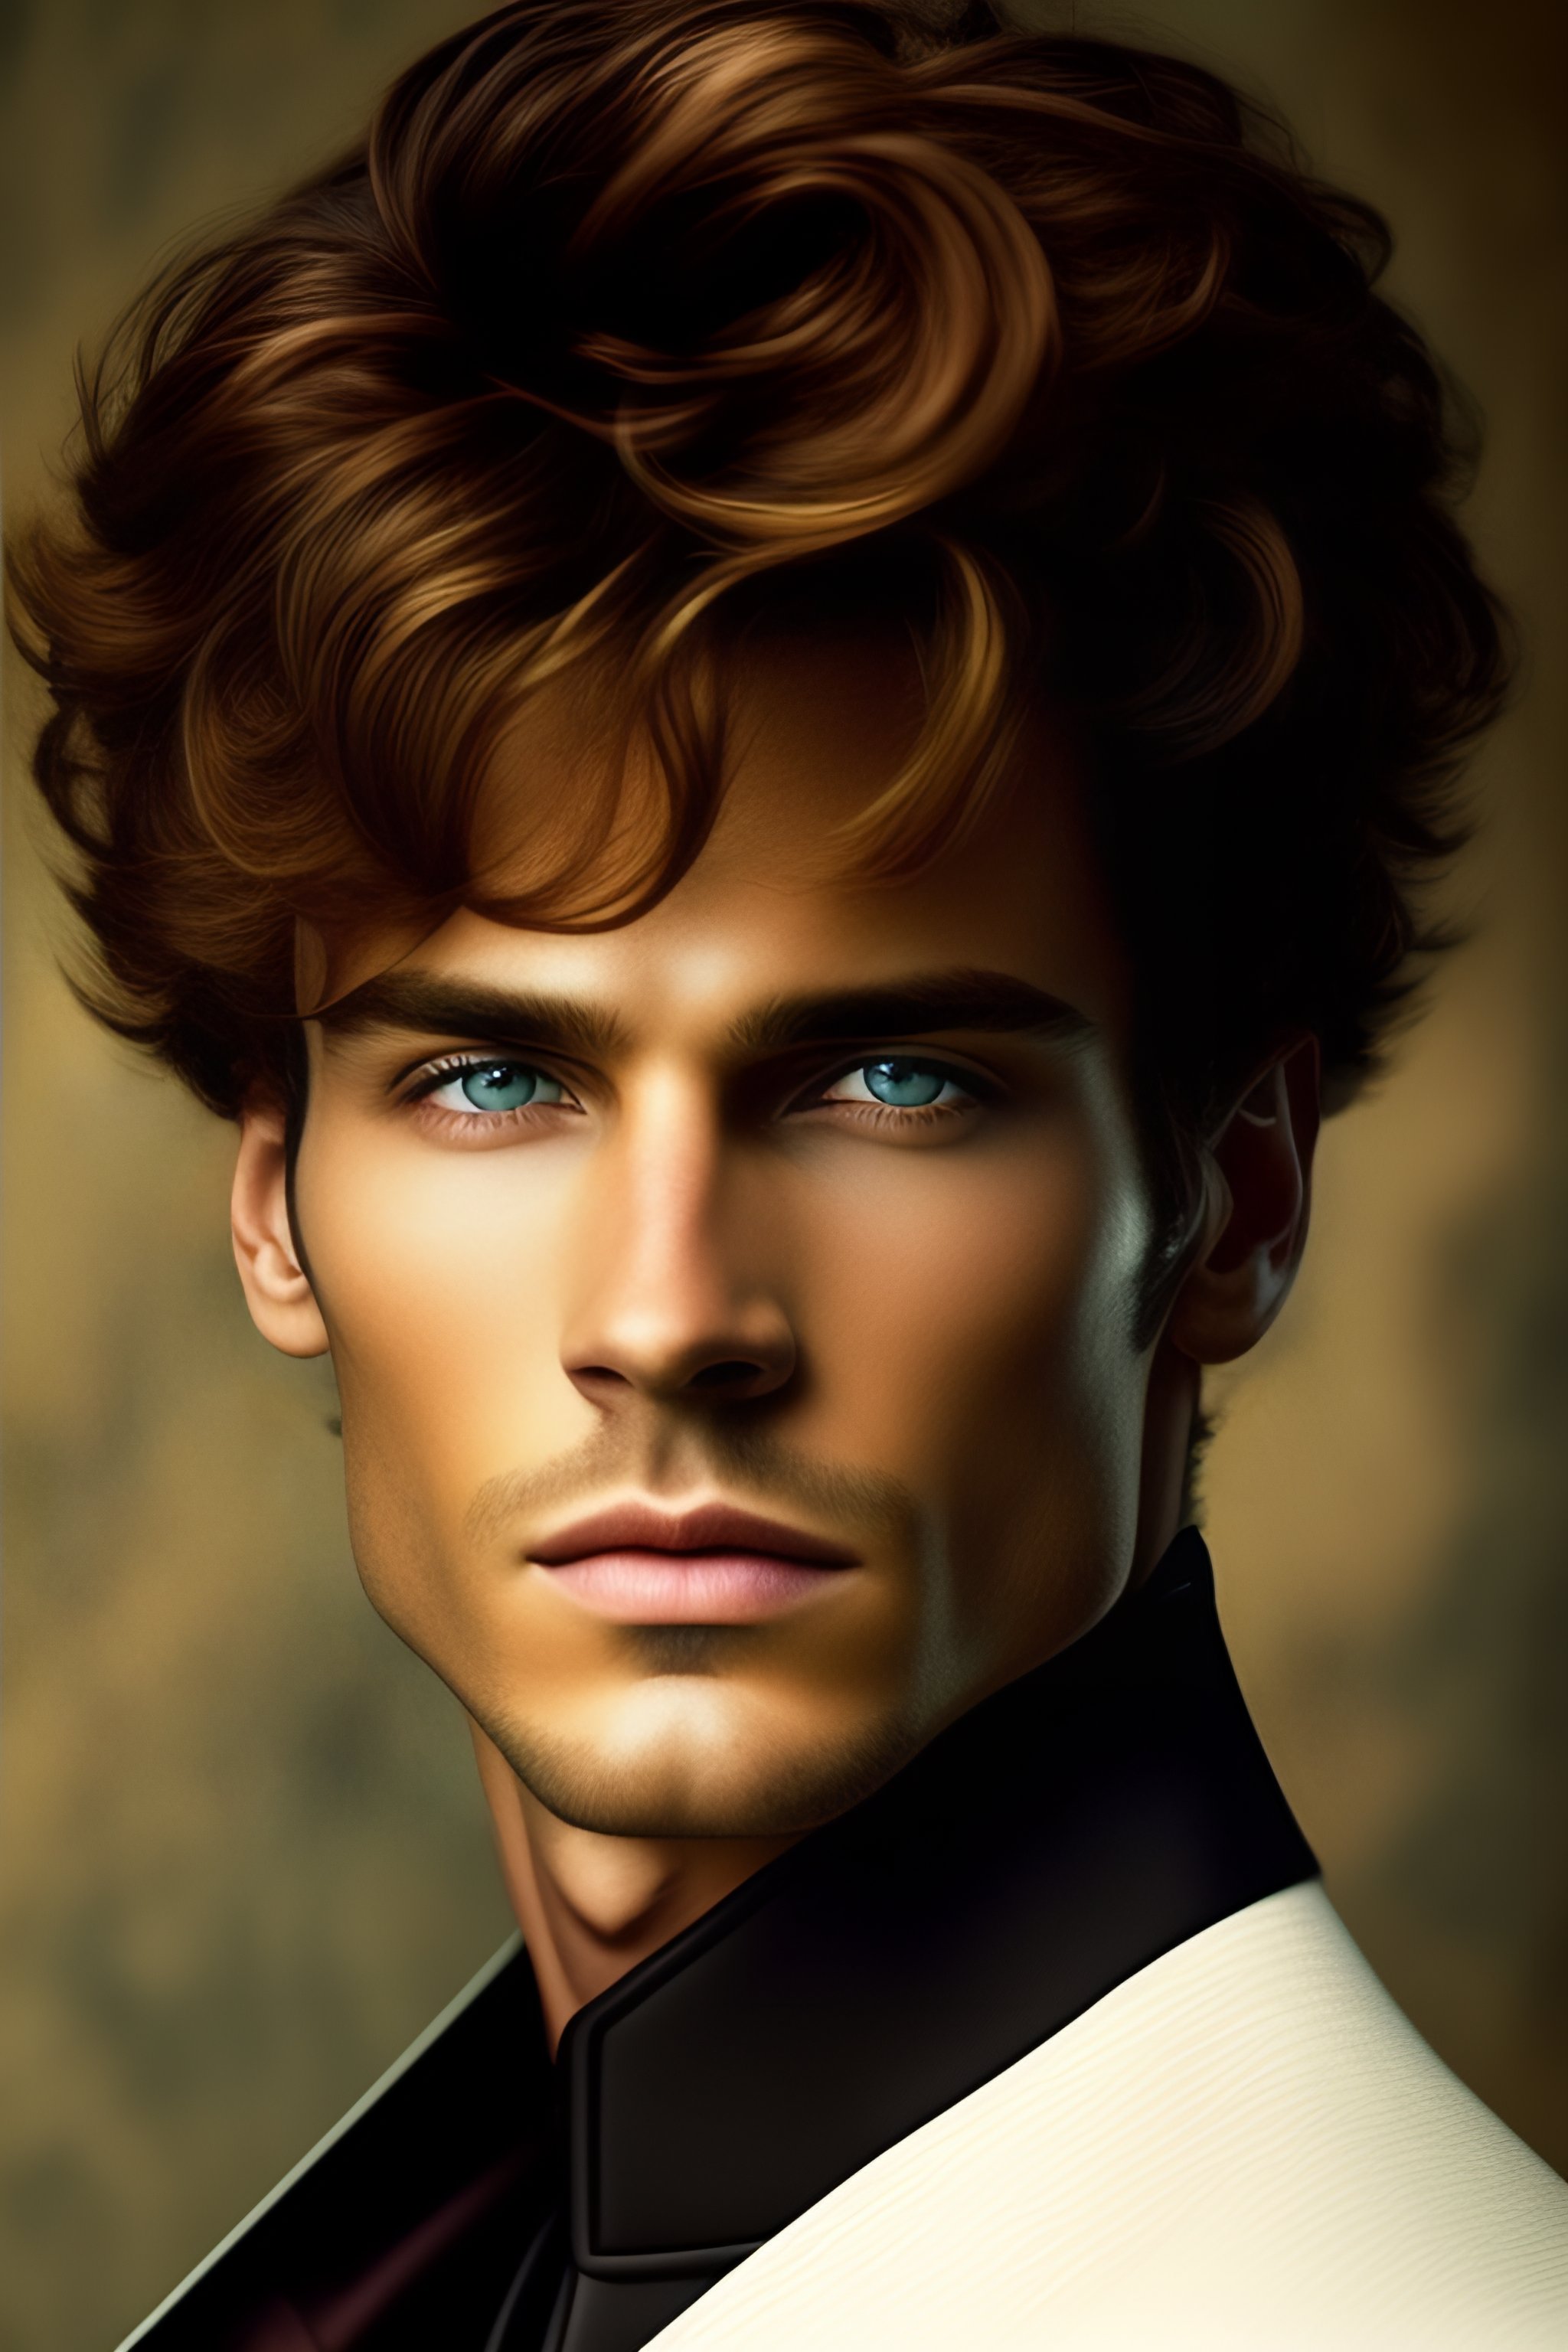 Lexica - A Man, eyes green, brown hair